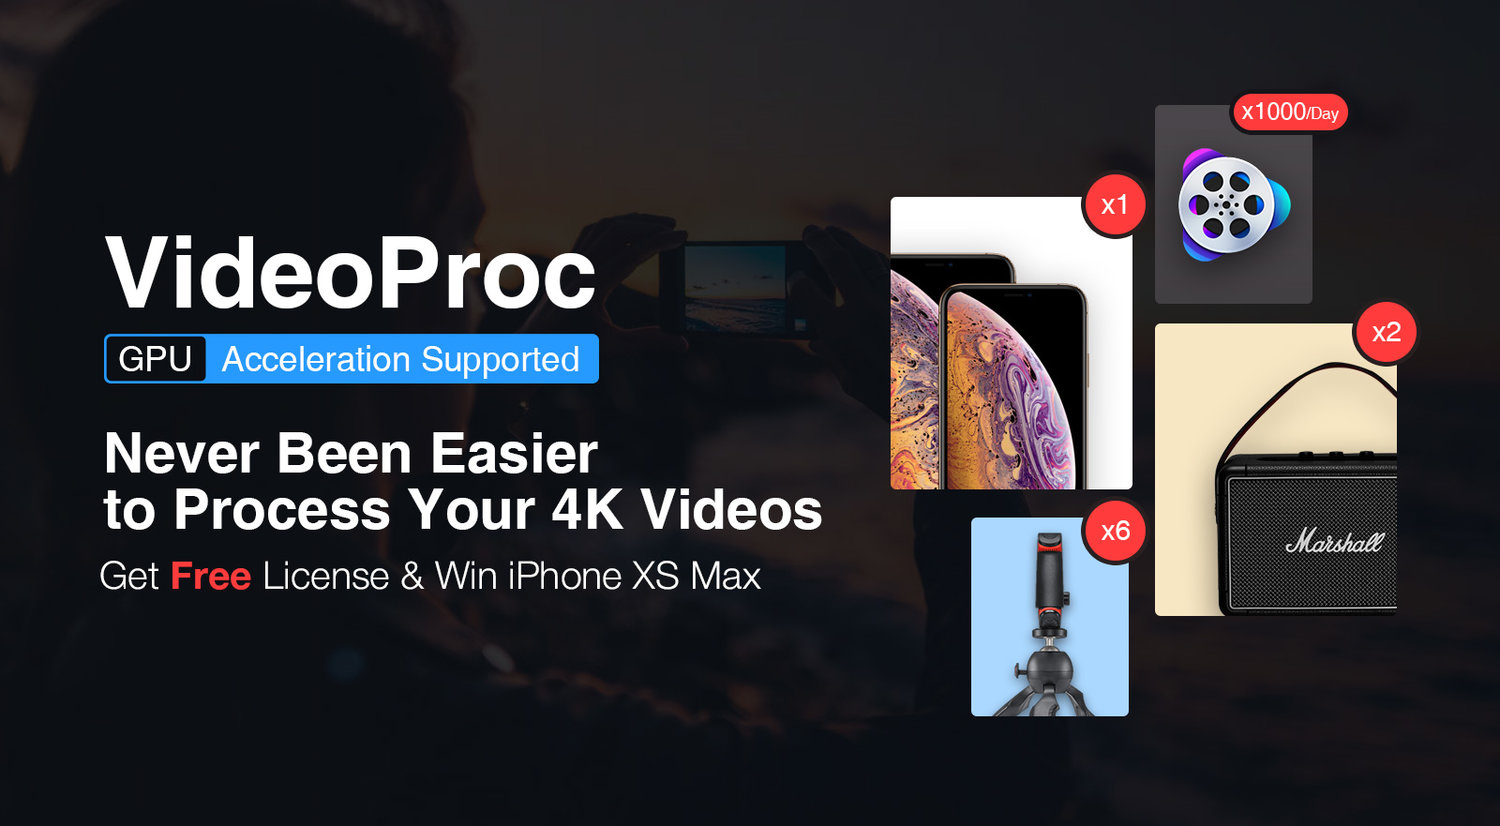 Tại sao VideoProc là công cụ chuyển đổi video iPhone tốt nhất [Tặng bản quyền miễn phí và bốc thăm trung thưởng  iPhone XS Max]